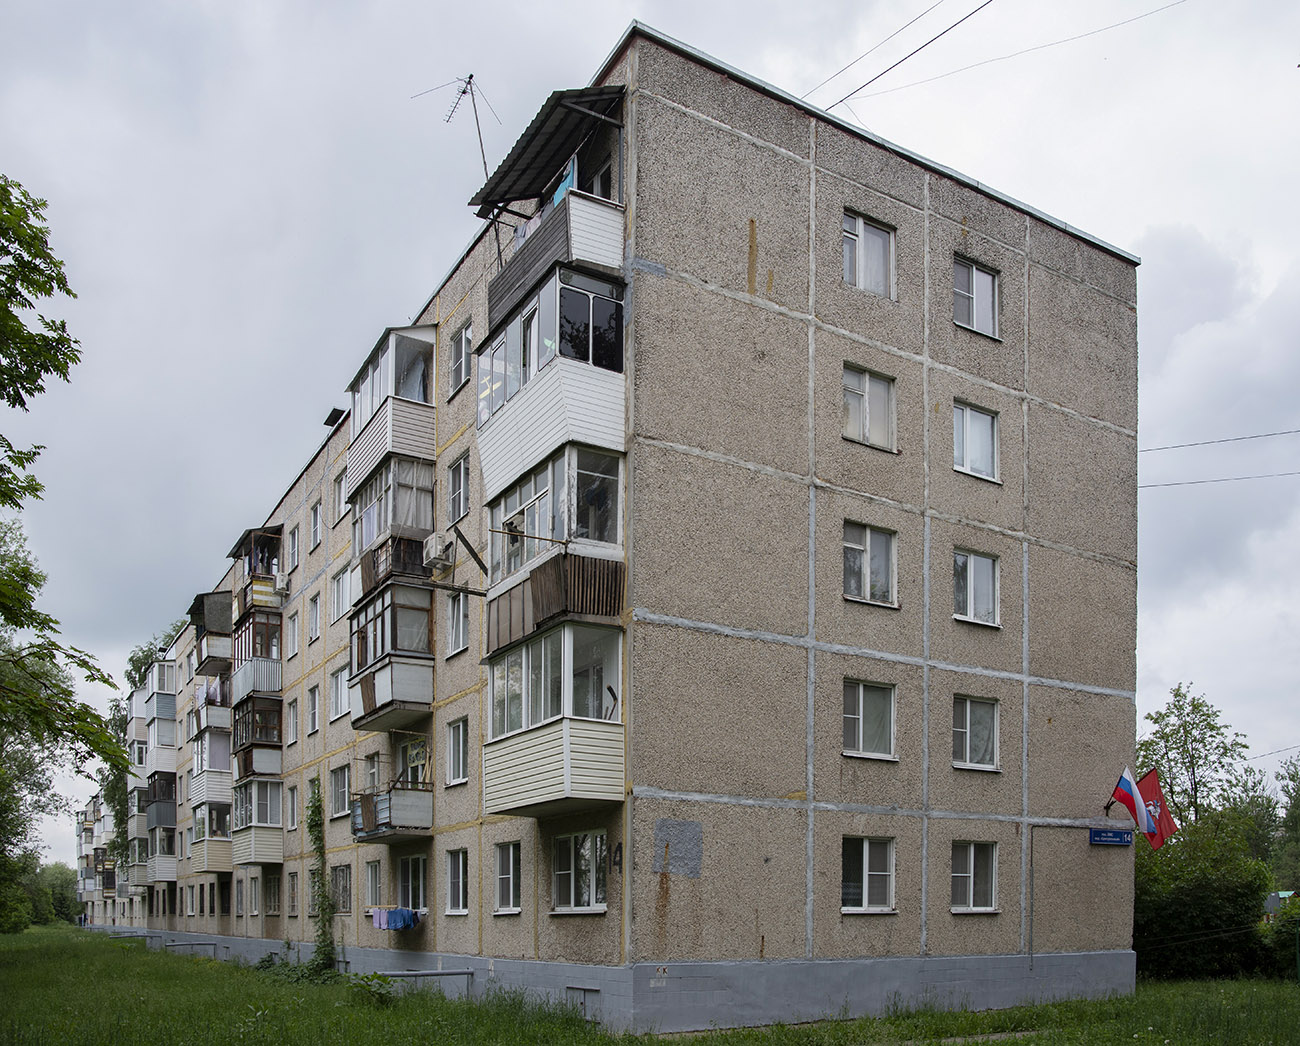 Settlement Voronovskoe, пос. ЛМС, микрорайон Центральный, 14